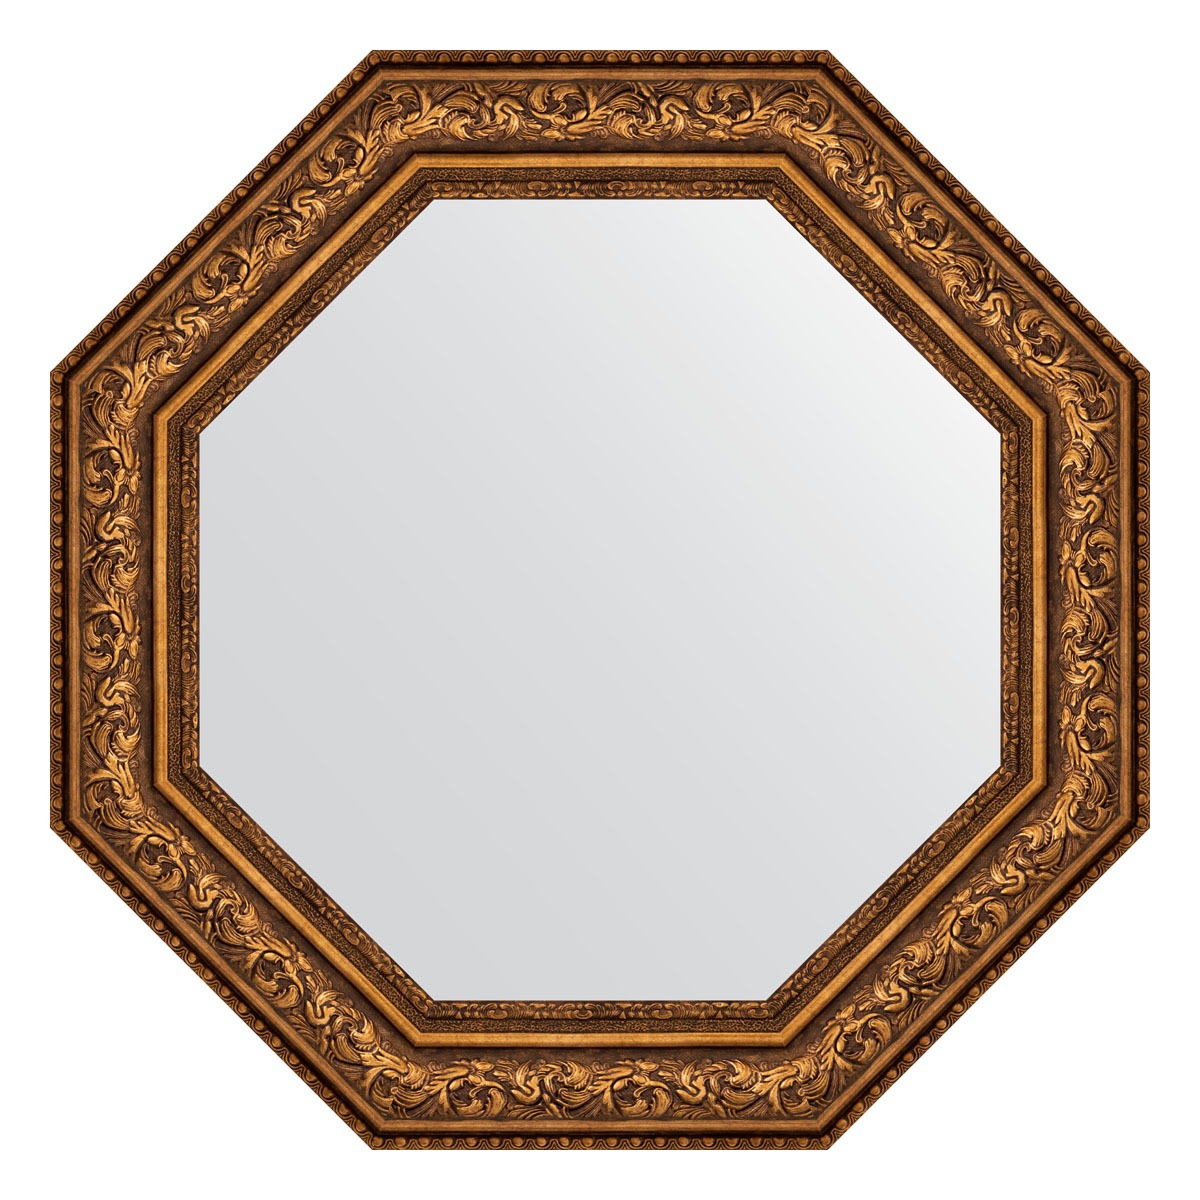 Зеркало в багетной раме Evoform виньетка состаренная бронза 109 мм 80,6х80,6 см